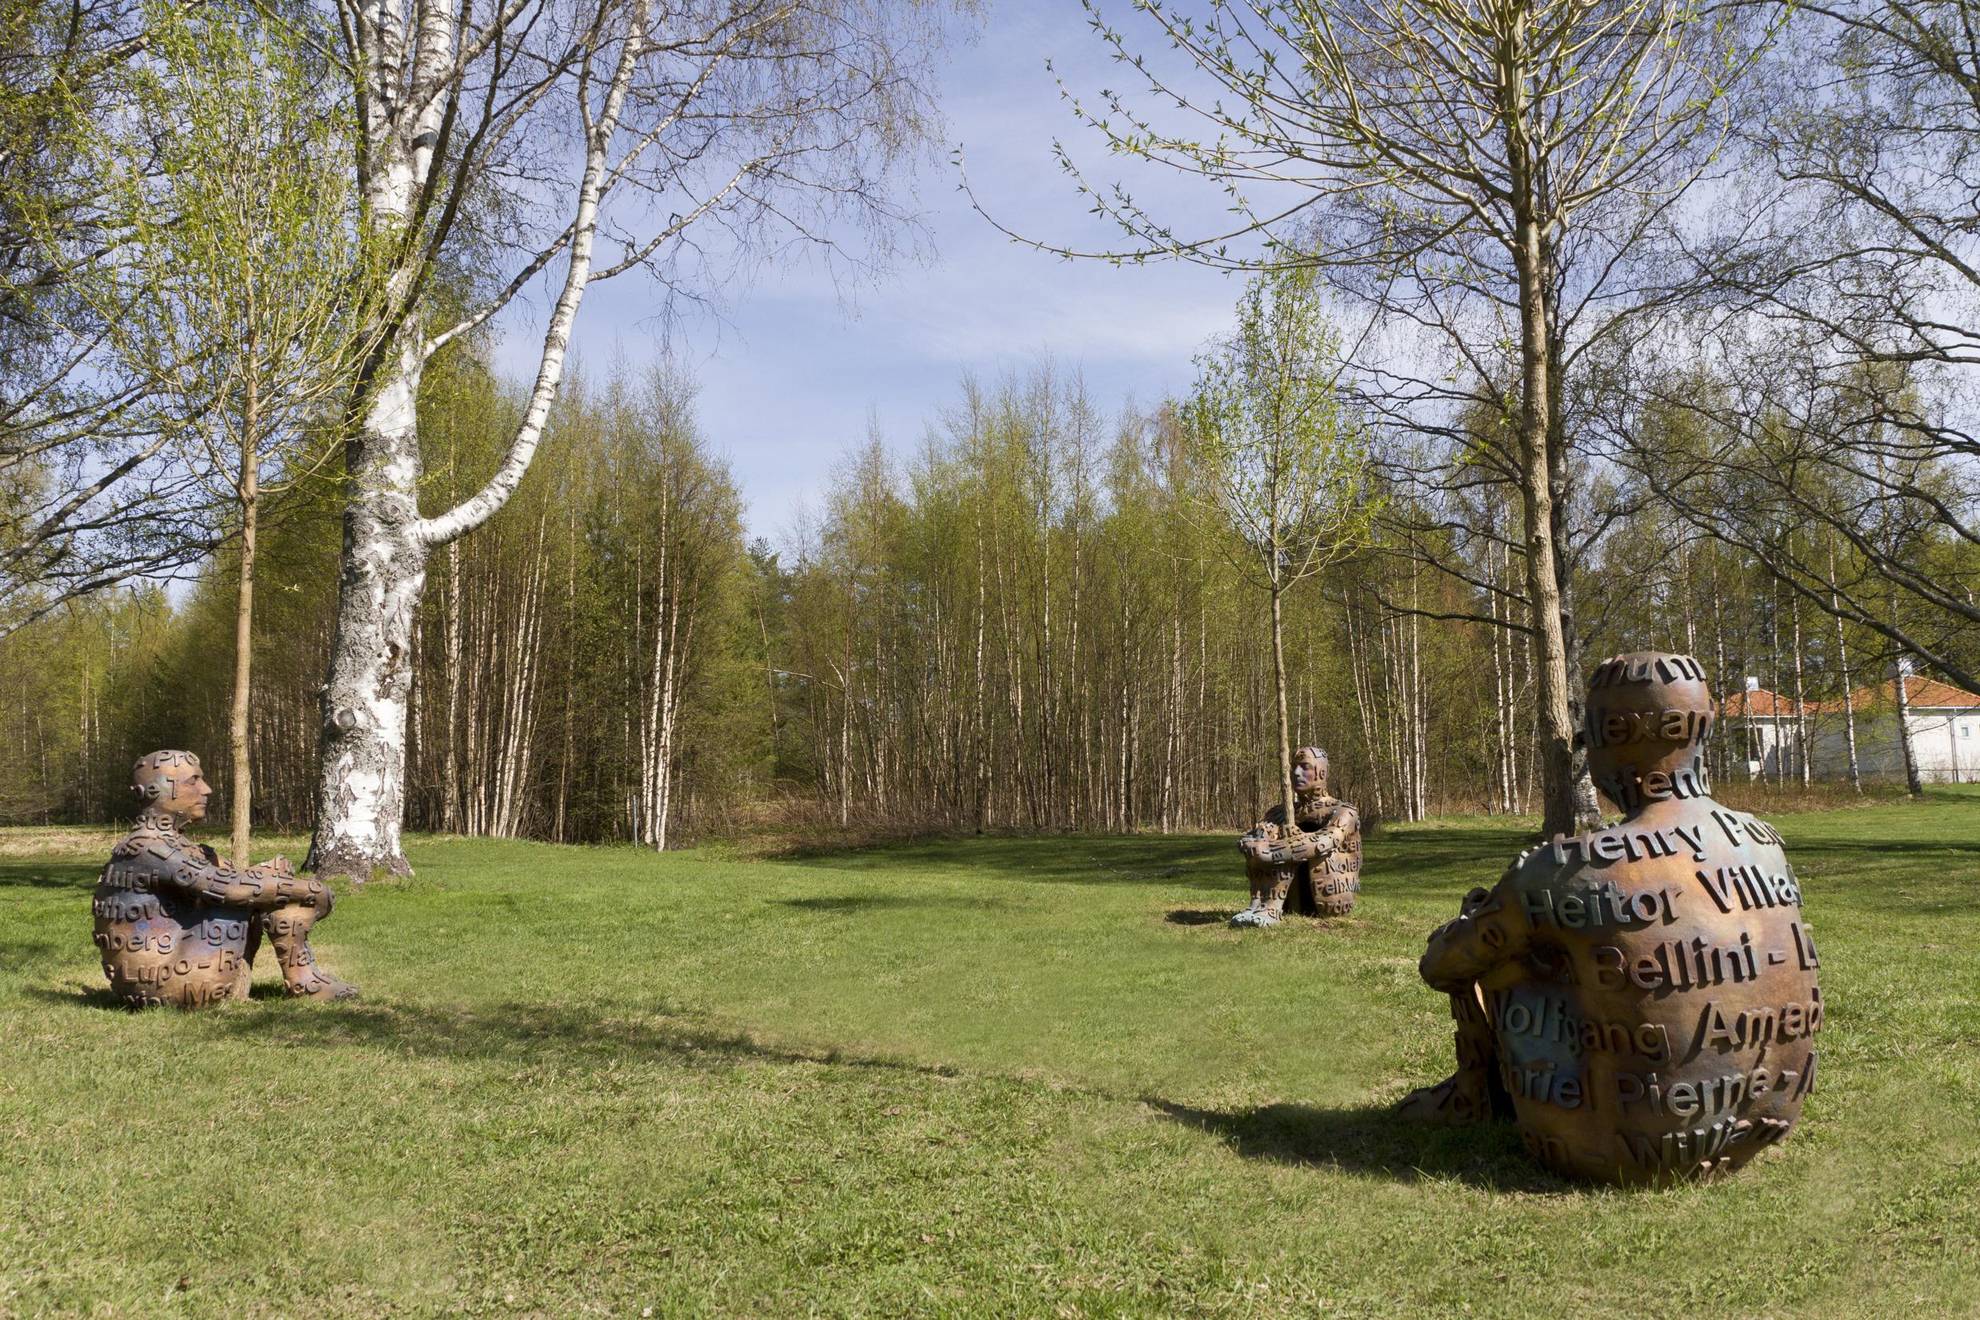 On voit trois sculptures en forme d'humains assis étreignant chacune un arbre au parc de sculptures d'Umedalen.